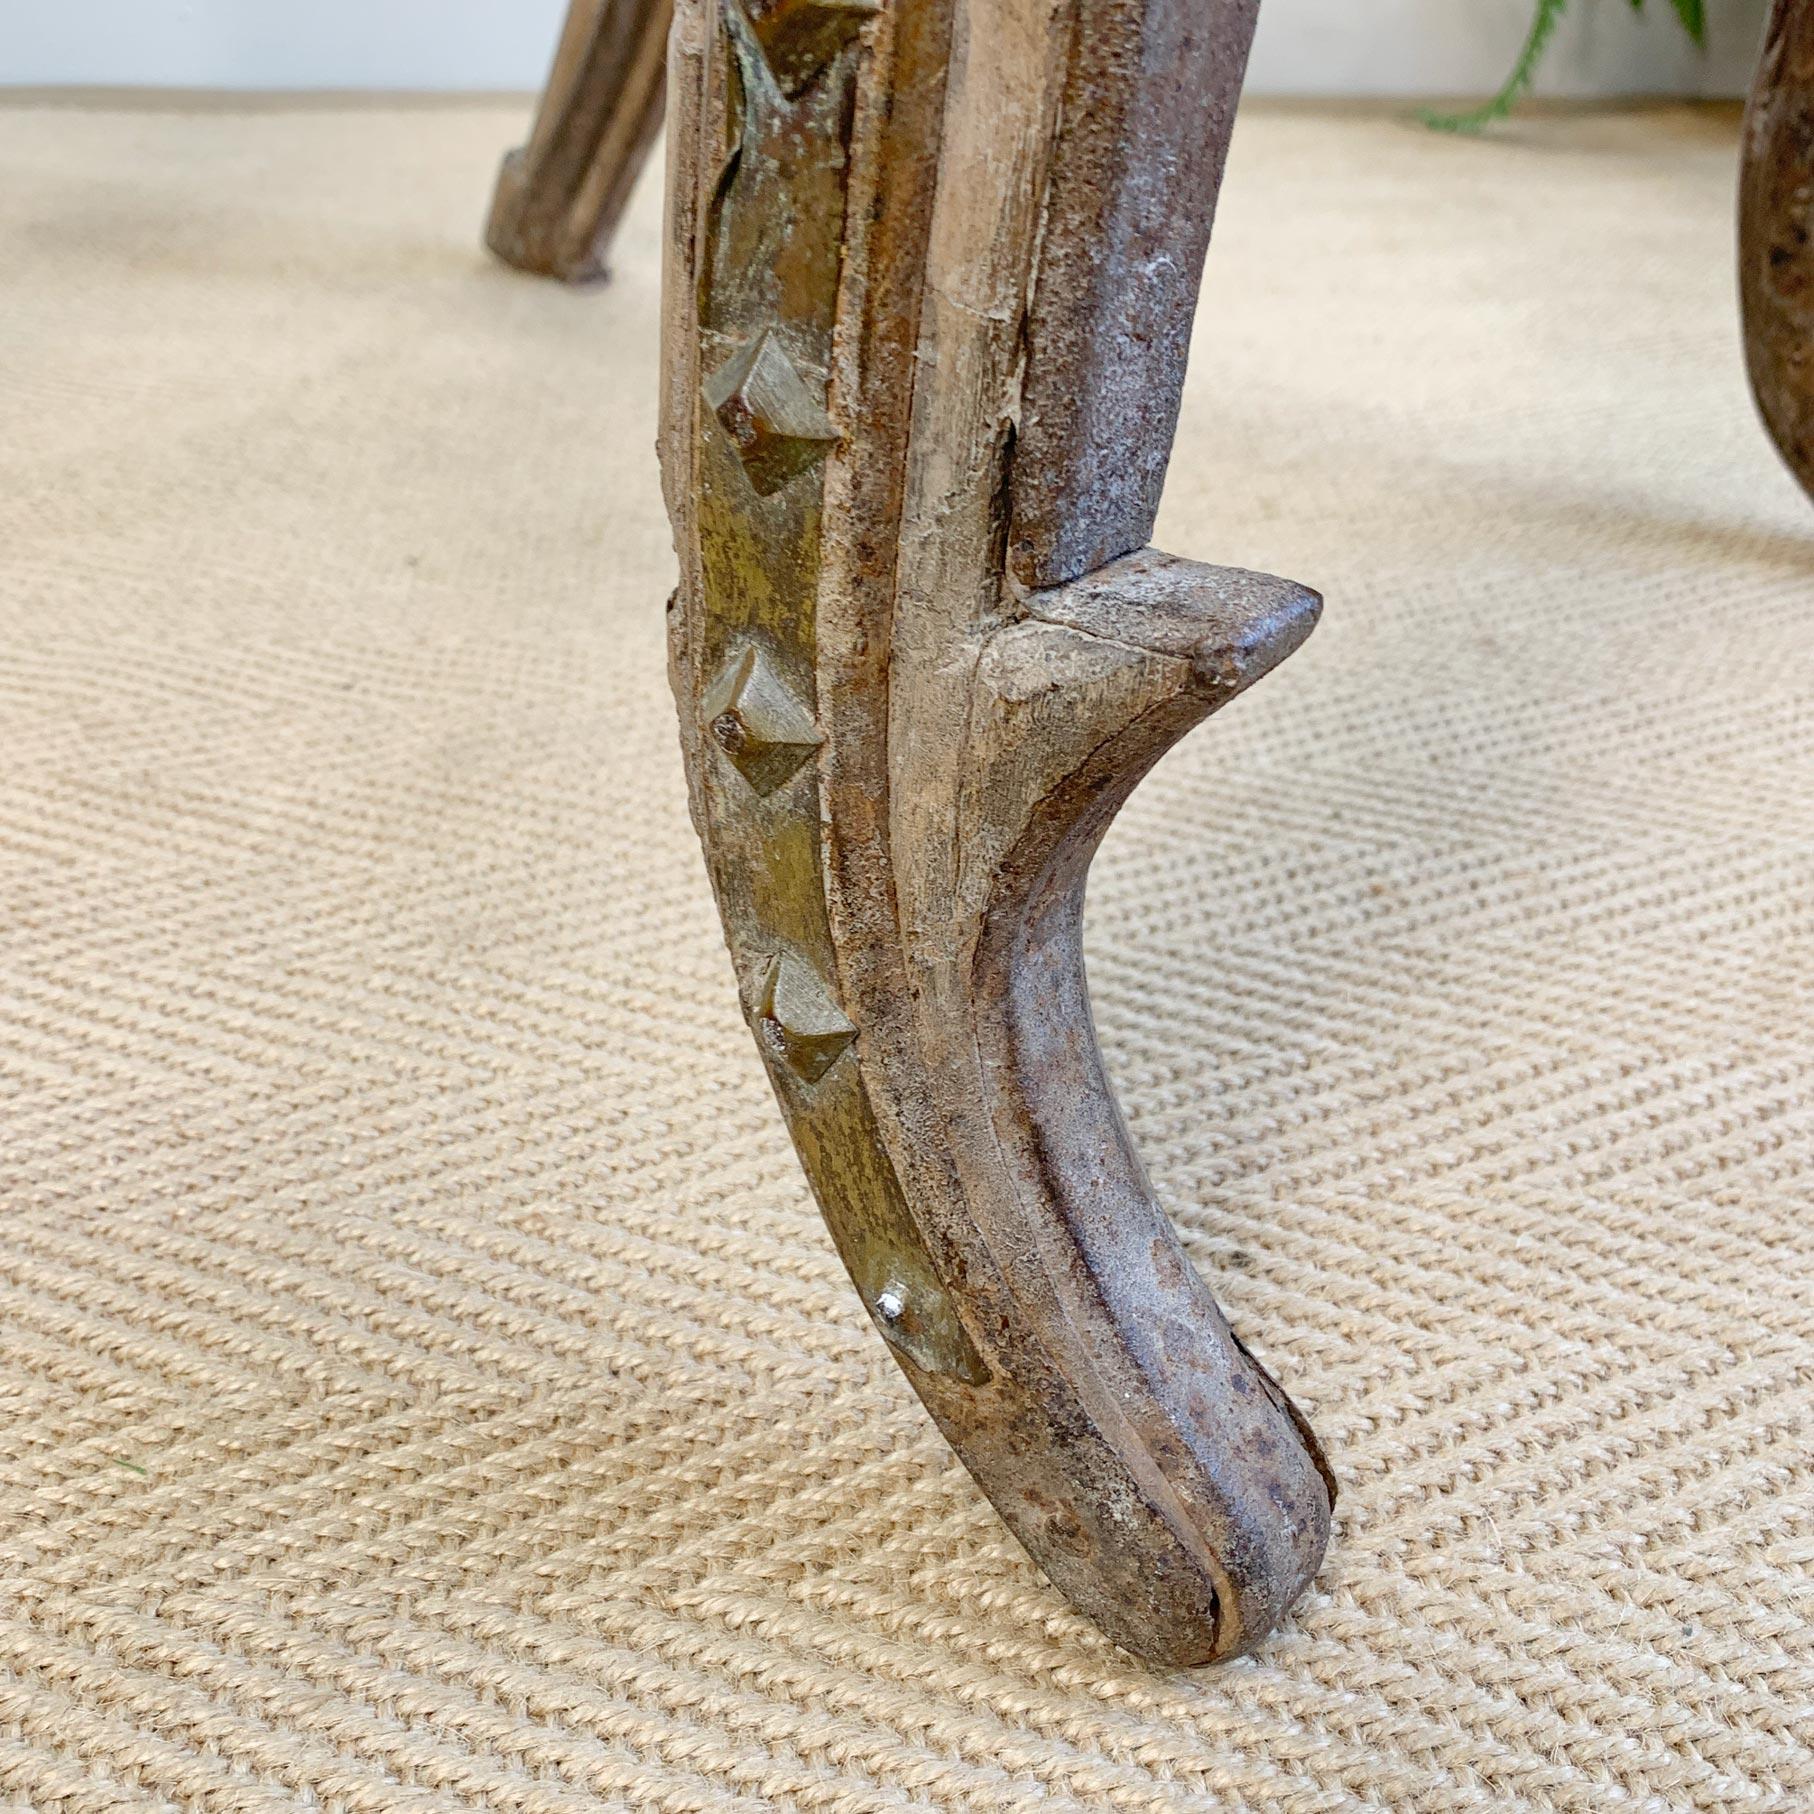 Außergewöhnlicher und seltener indischer Stuhl aus dem 19. Jahrhundert, primitive handgefertigte Hartholzkonstruktion mit handgeschmiedeten Eisenstützen und dekorativen Elementen aus Eisen und Messing. Die Sitzfläche und die Rückenlehne sind aus